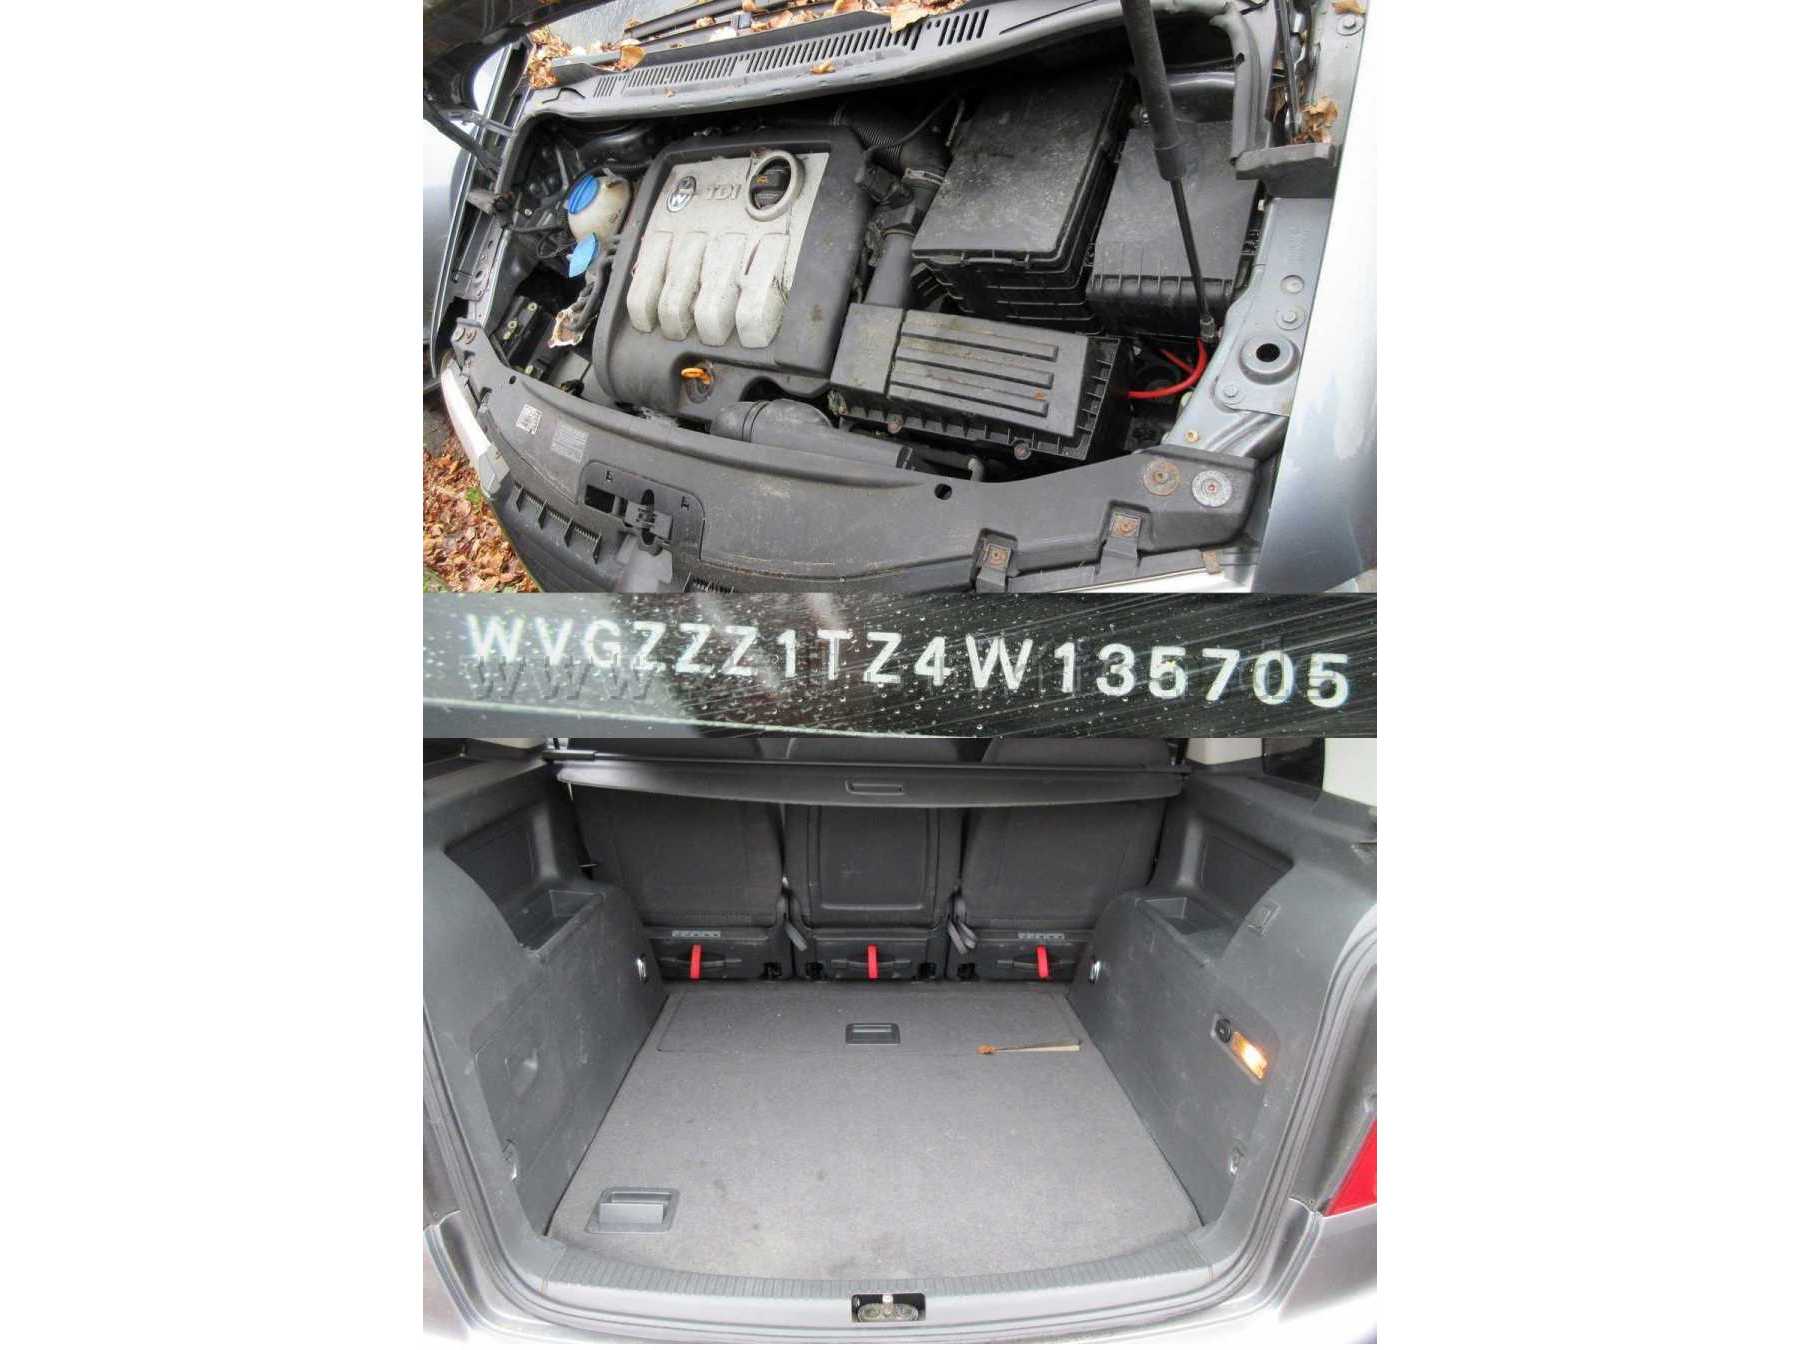 VW Touran - Motor-und Kofferraum-Fahrgestellnummer